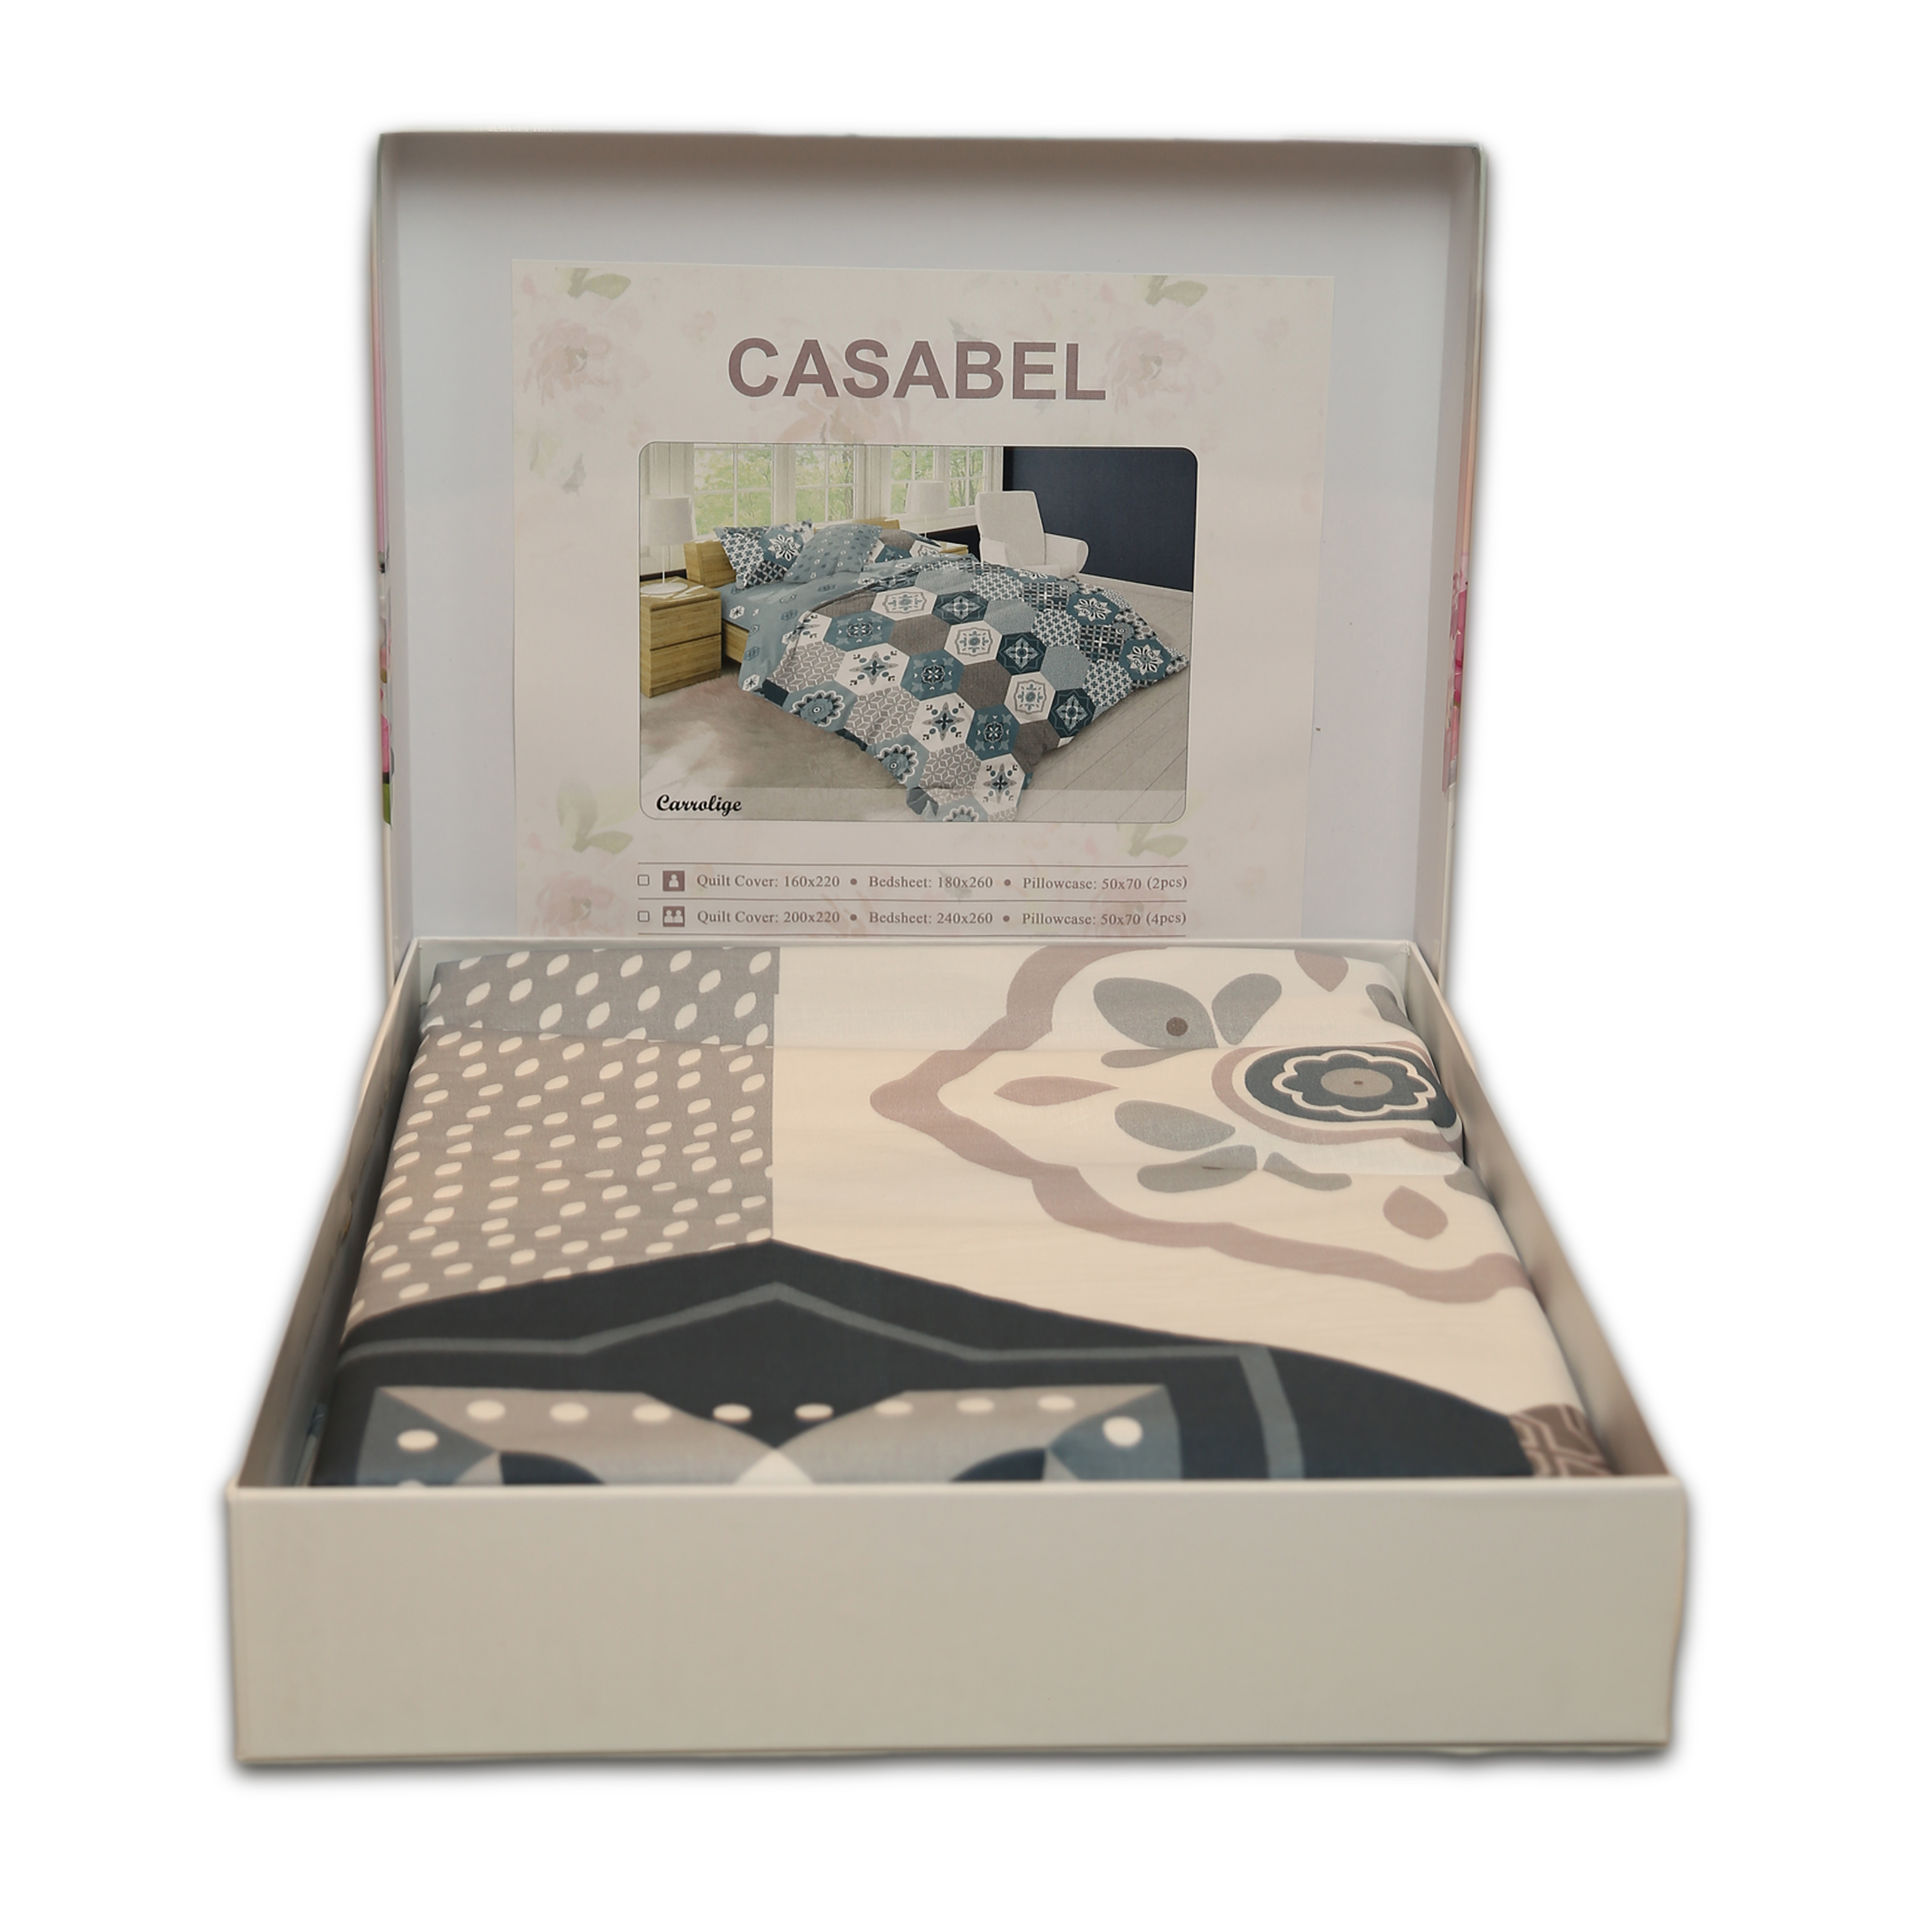 سرویس ملحفه دیجیتالی پرکاله دورو کازابل طرح کارولیگ Casabel Digital QCS DBLFaces  Carrolige